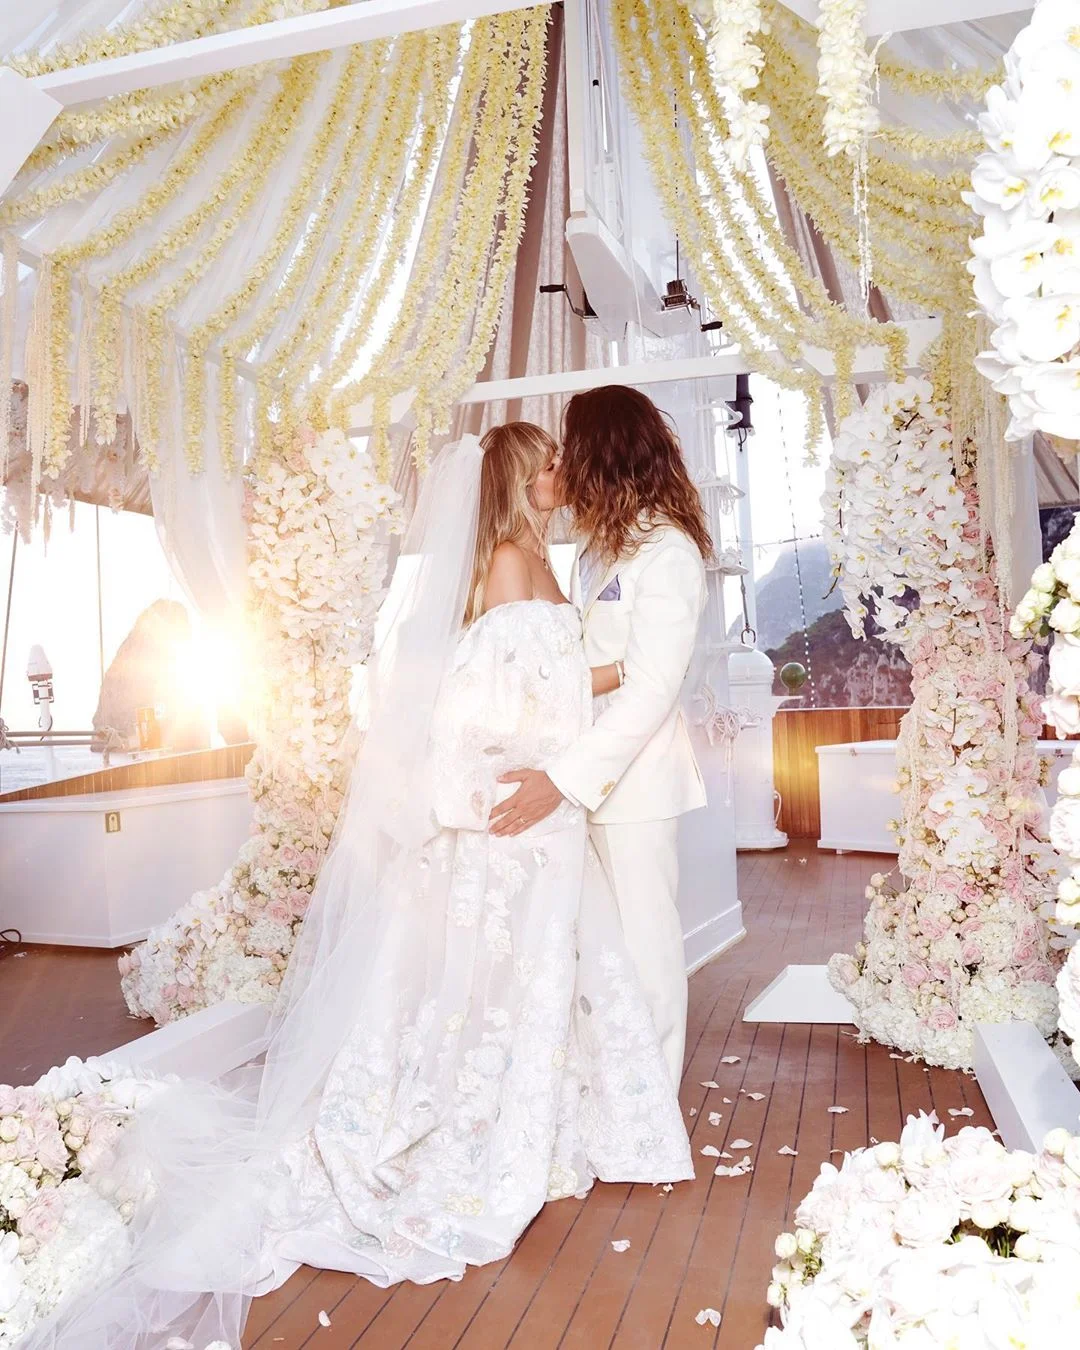 Гайді Клум і Том Каулітц одружилися: офіційні фото з весілля - фото 444190